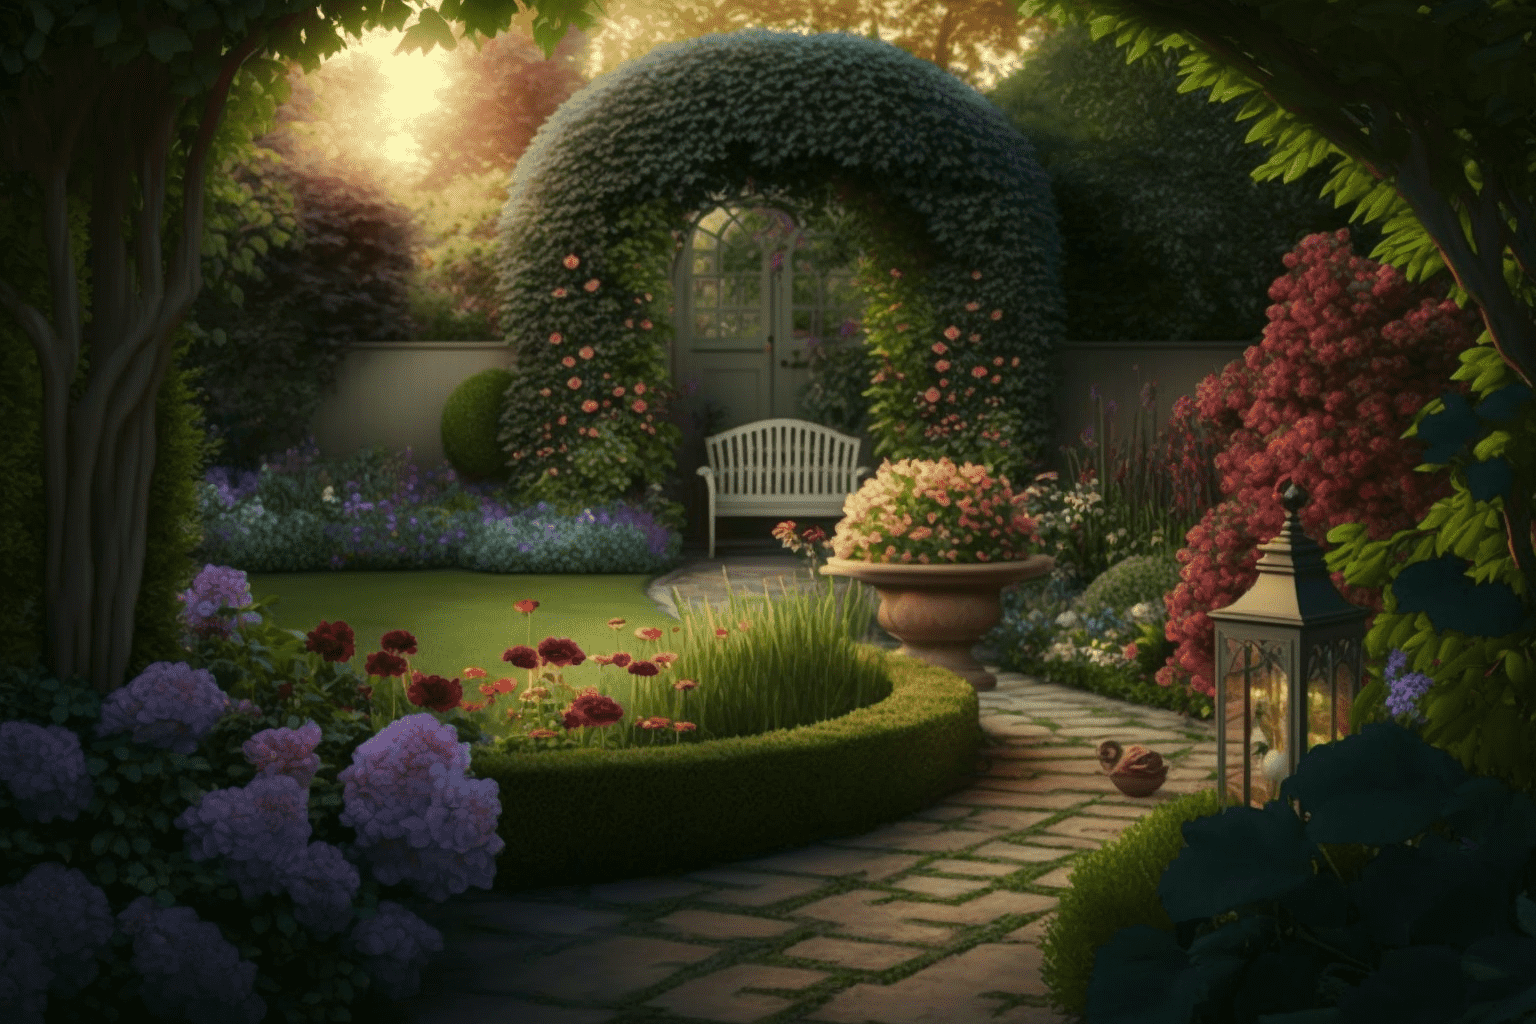 How to Design a Romantic Garden